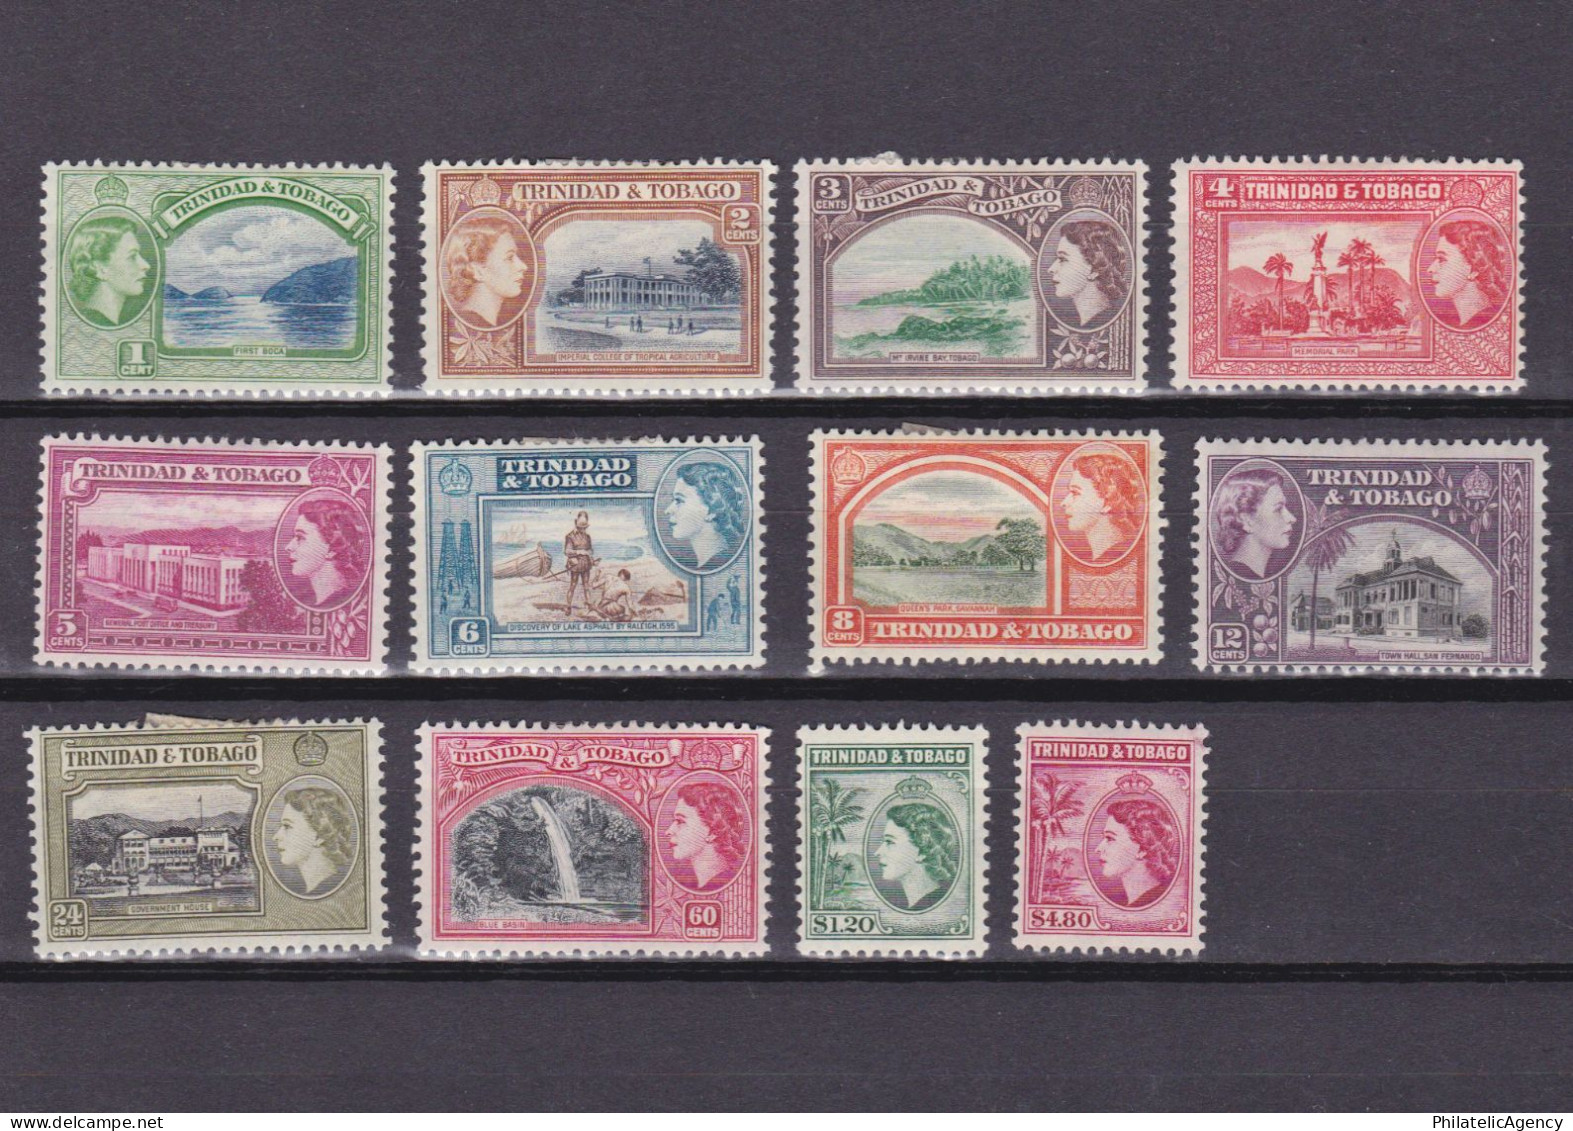 TRINIDAD & TOBAGO 1953, SG #267-278, CV £40, MH - Trinidad & Tobago (...-1961)